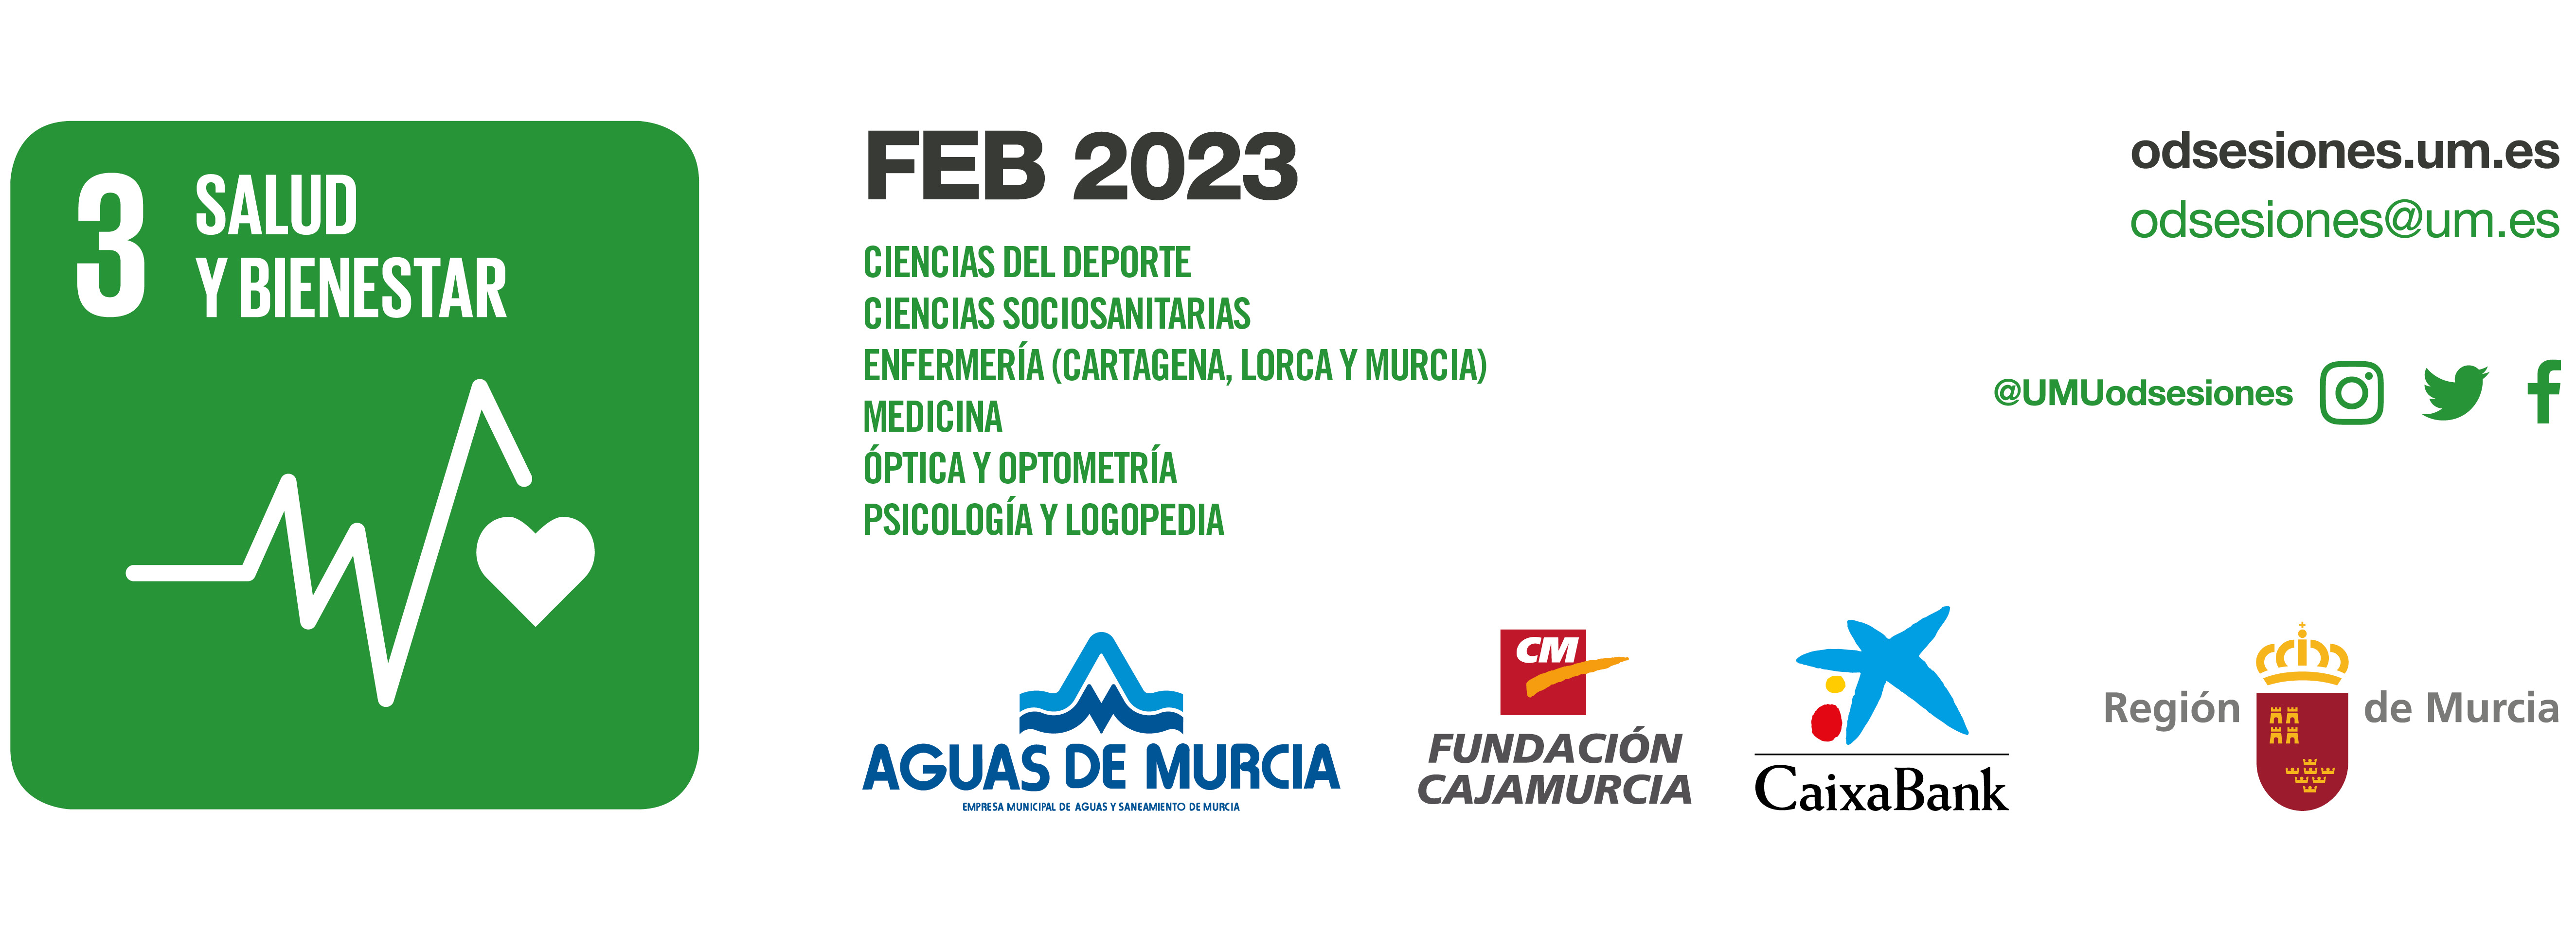 Agenda de actividades del ODS 3 de la Universidad de Murcia